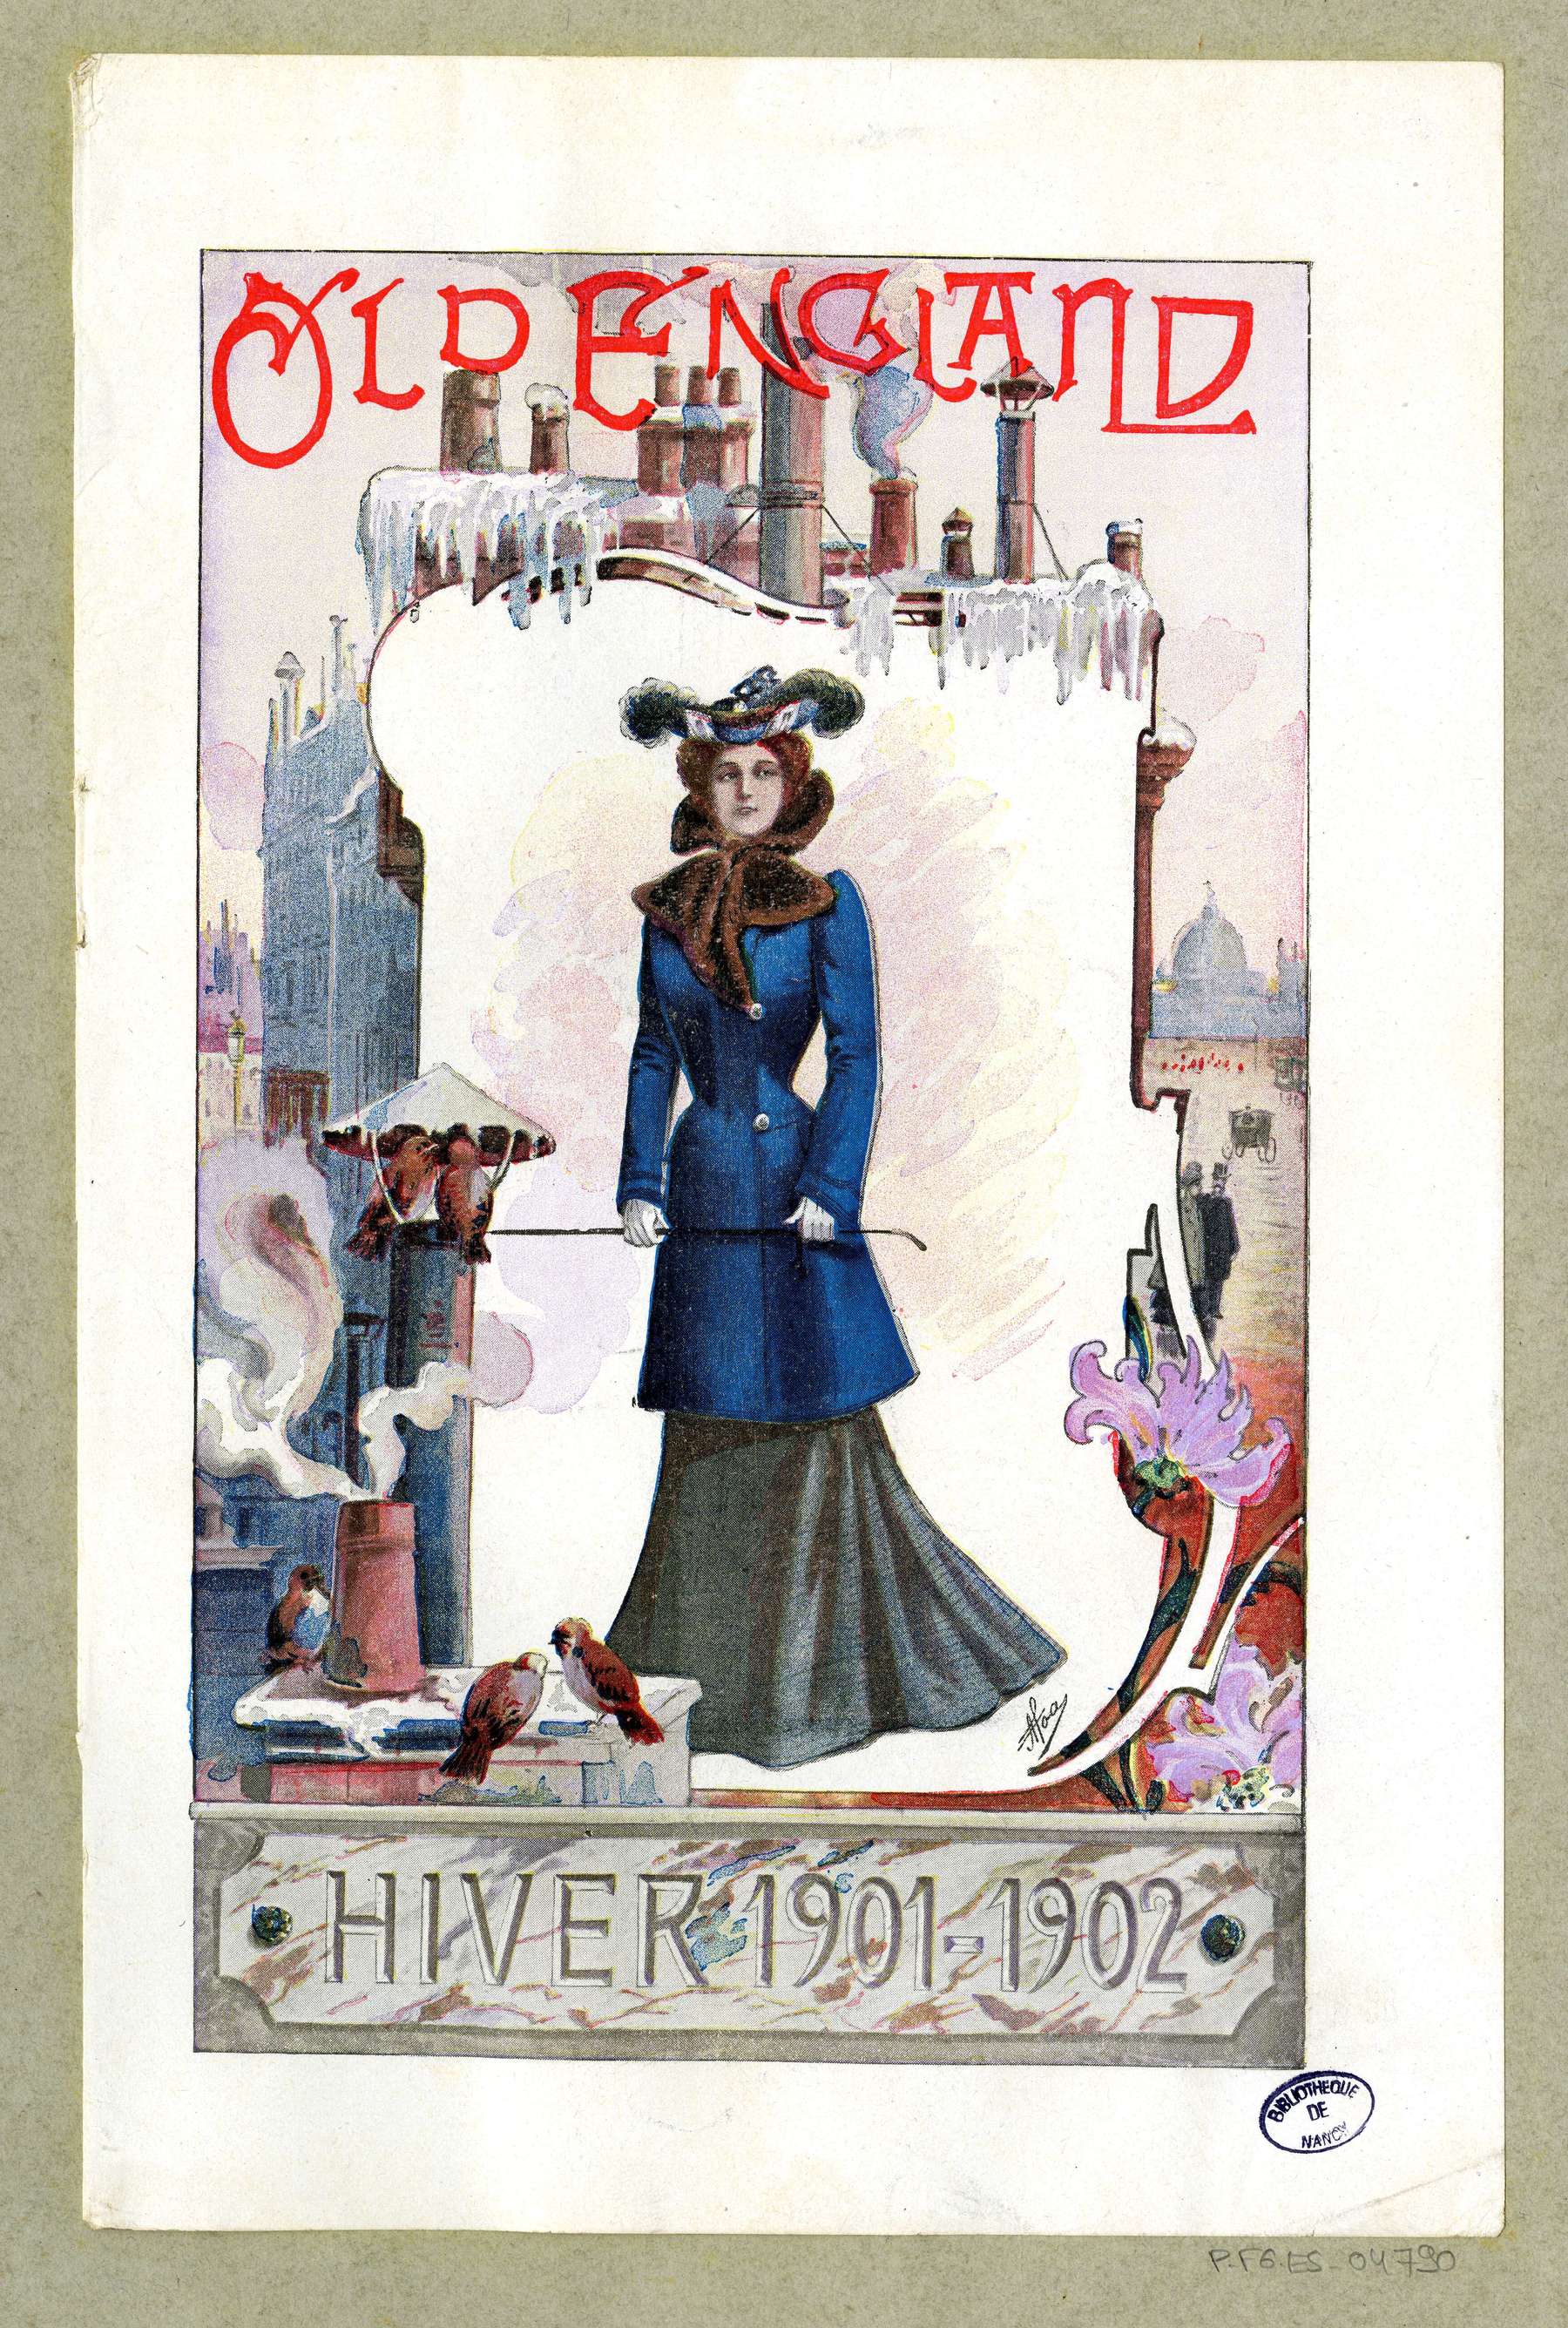 Contenu du Hiver 1901-1902